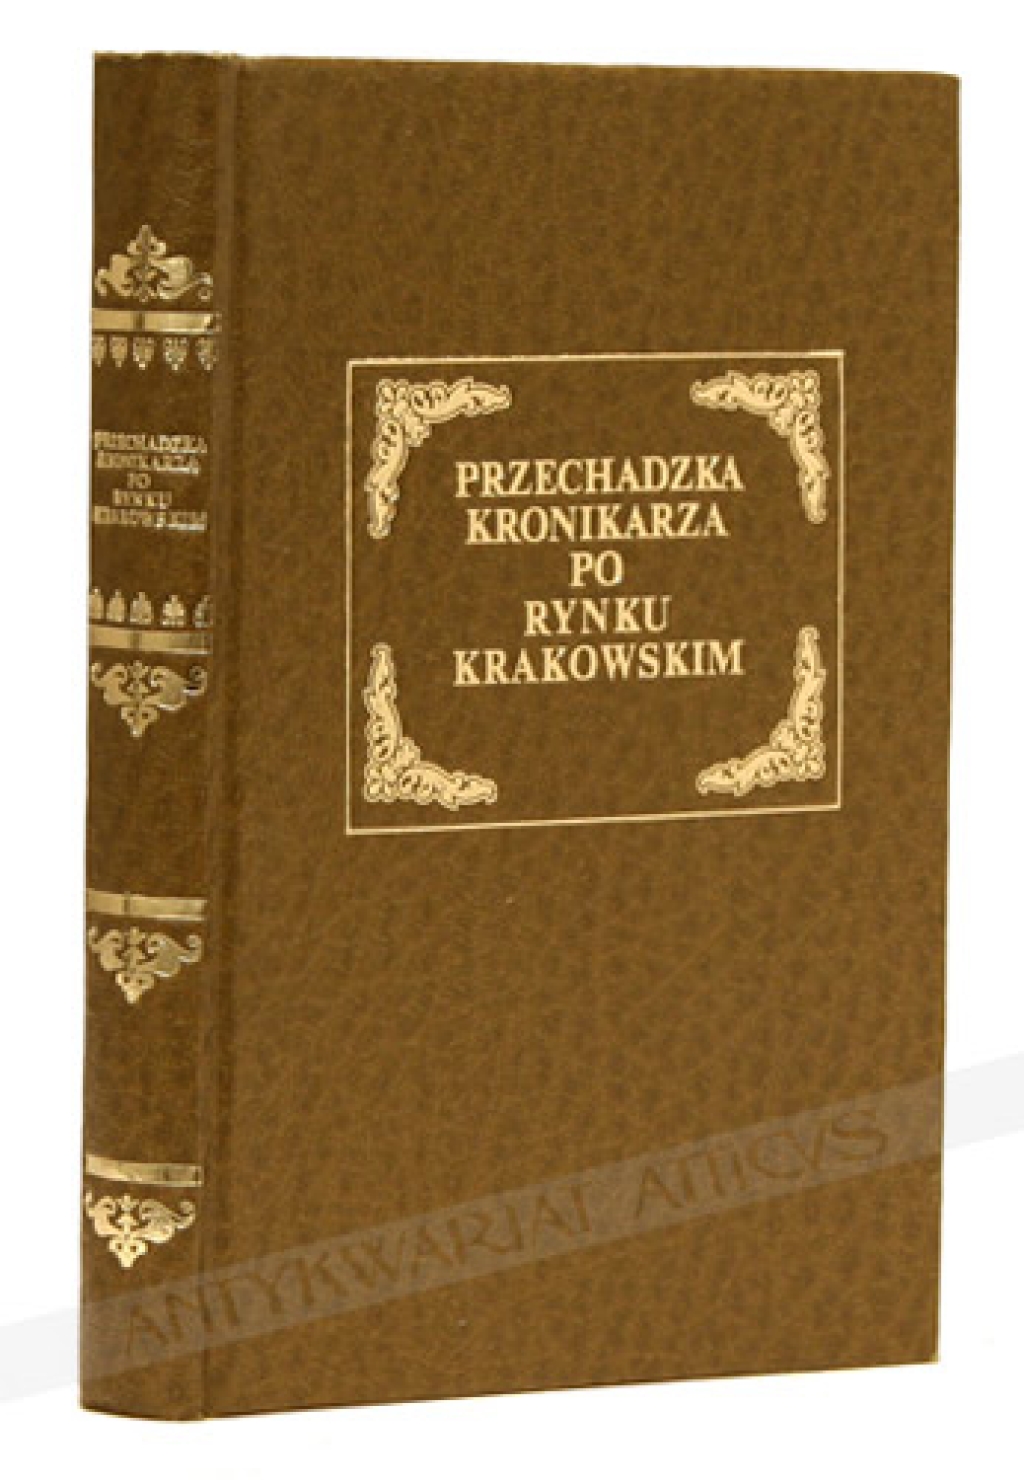 Przechadzka kronikarza po rynku krakowskim [reprint]